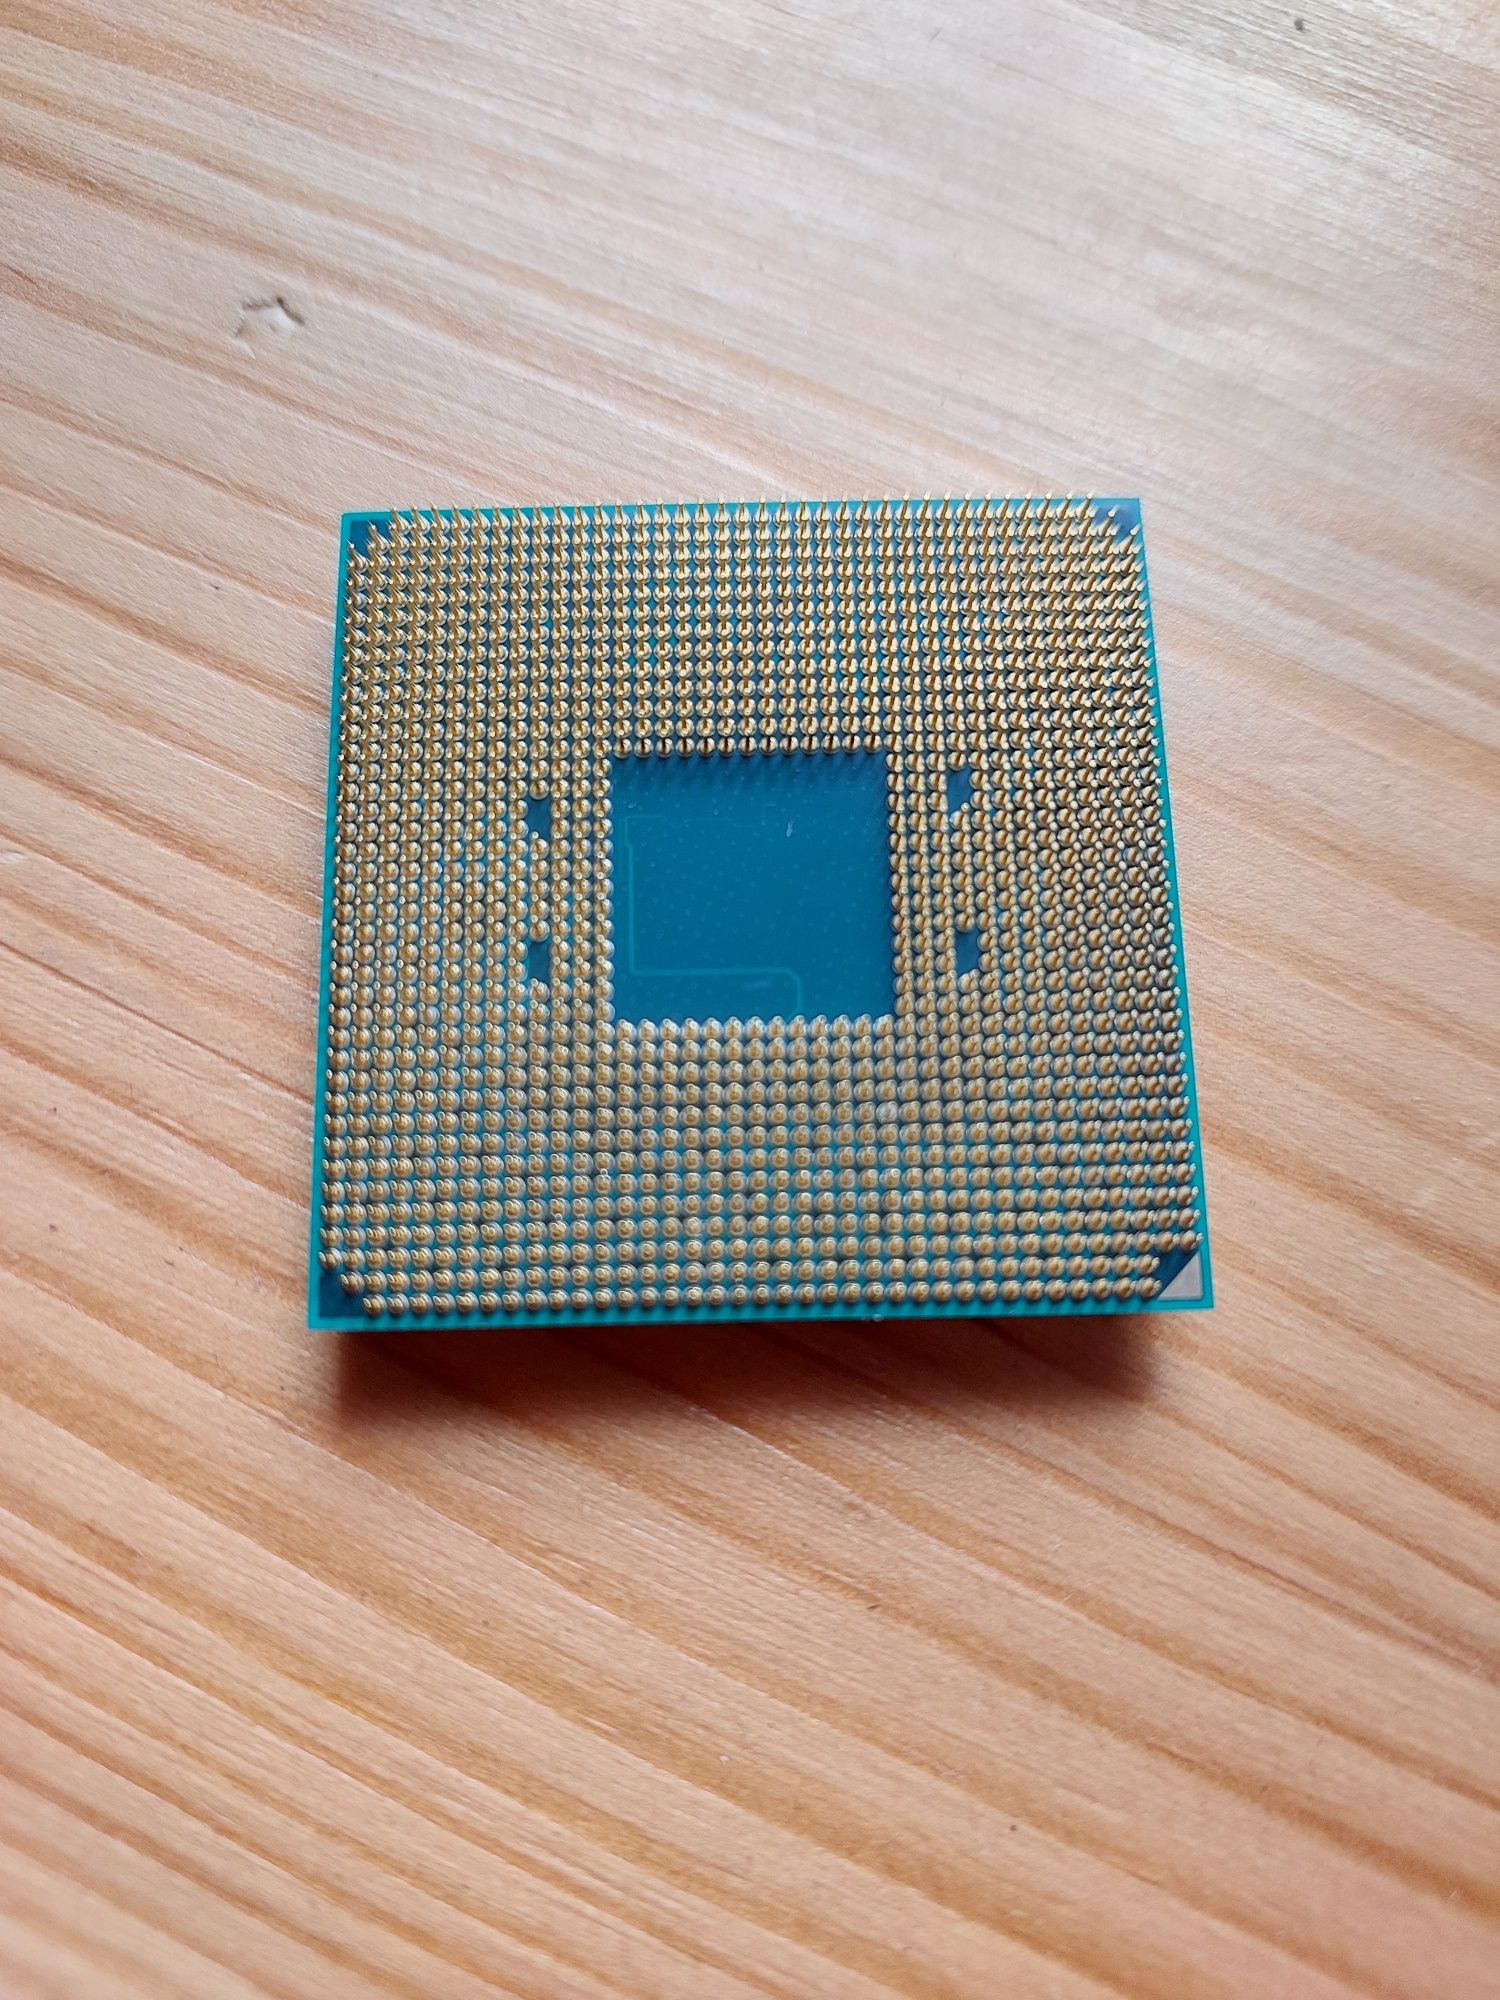 Продам процессор AMD Athlon 200GE